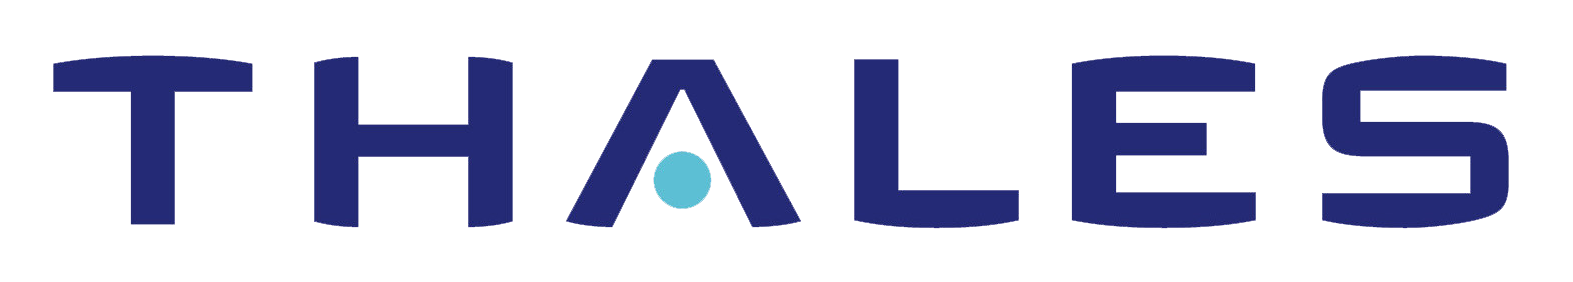 Thales_logo